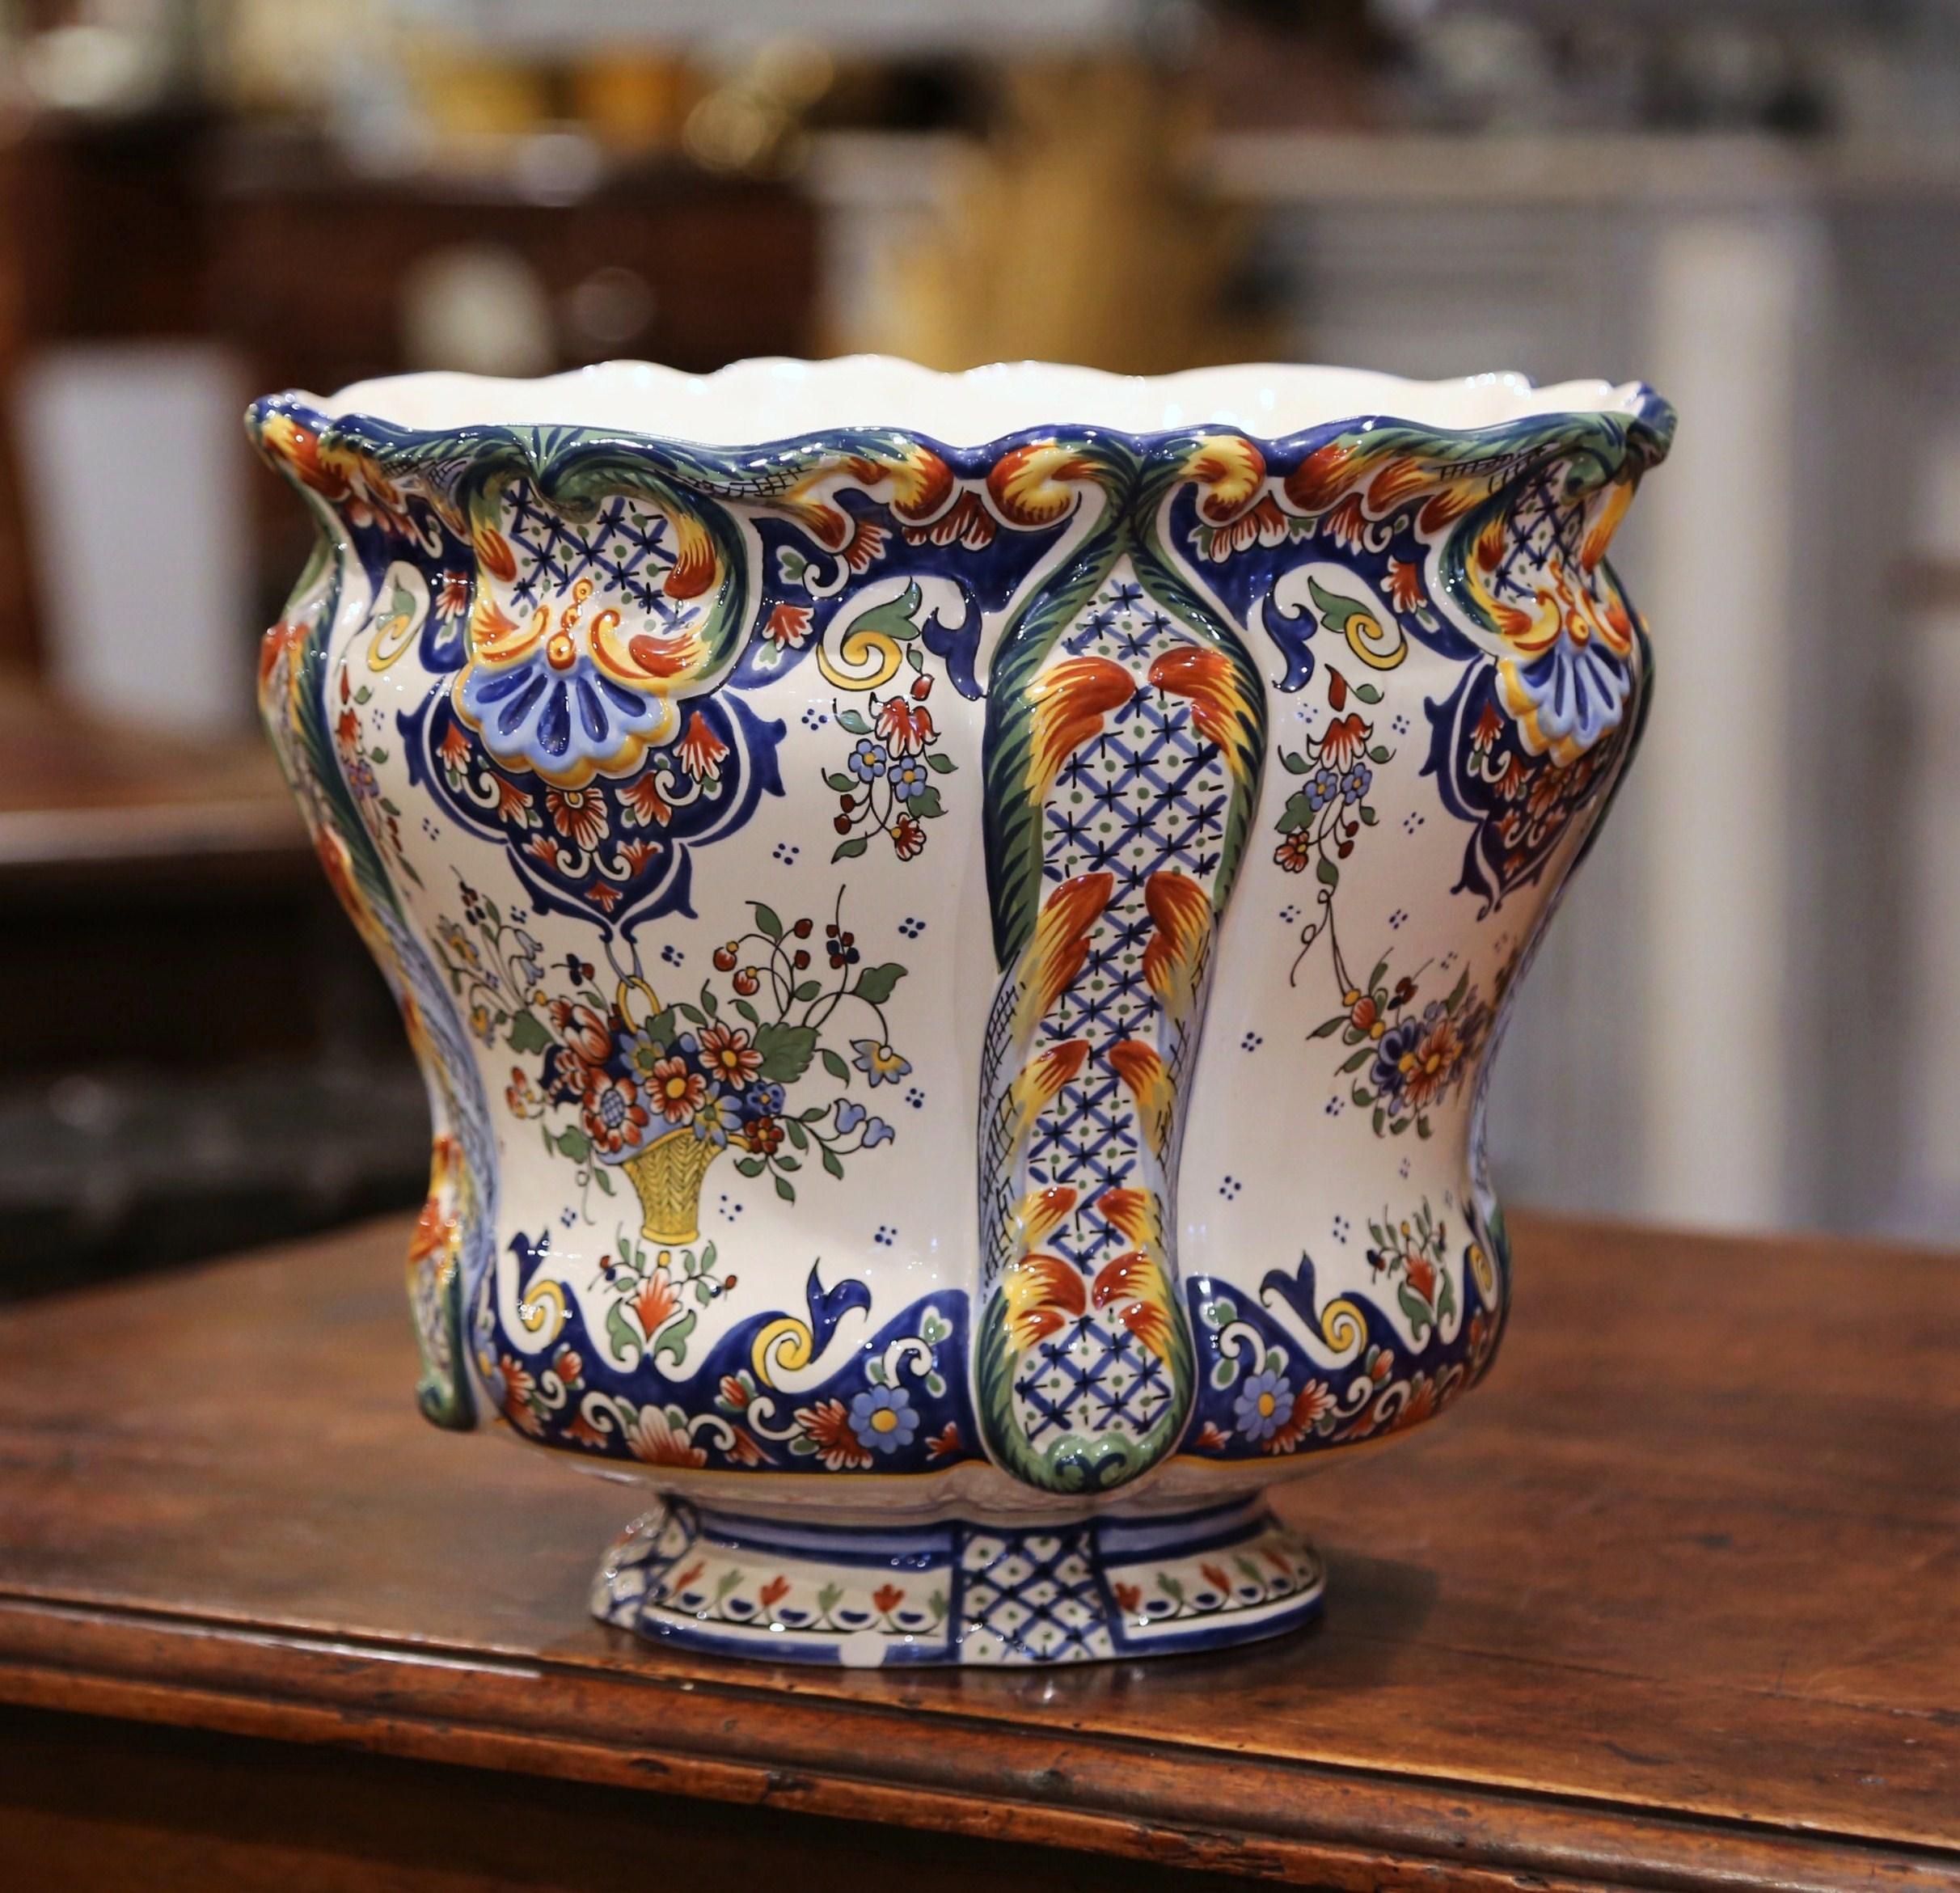 Dieser elegante, antike Übertopf aus Keramik wurde in der Normandie, Frankreich, um 1920 hergestellt. Das klassische, farbenfrohe Pflanzgefäß hat eine runde Form und einen gewellten, gebördelten Rand. Der große, tiefe Porzellanübertopf ist mit einem